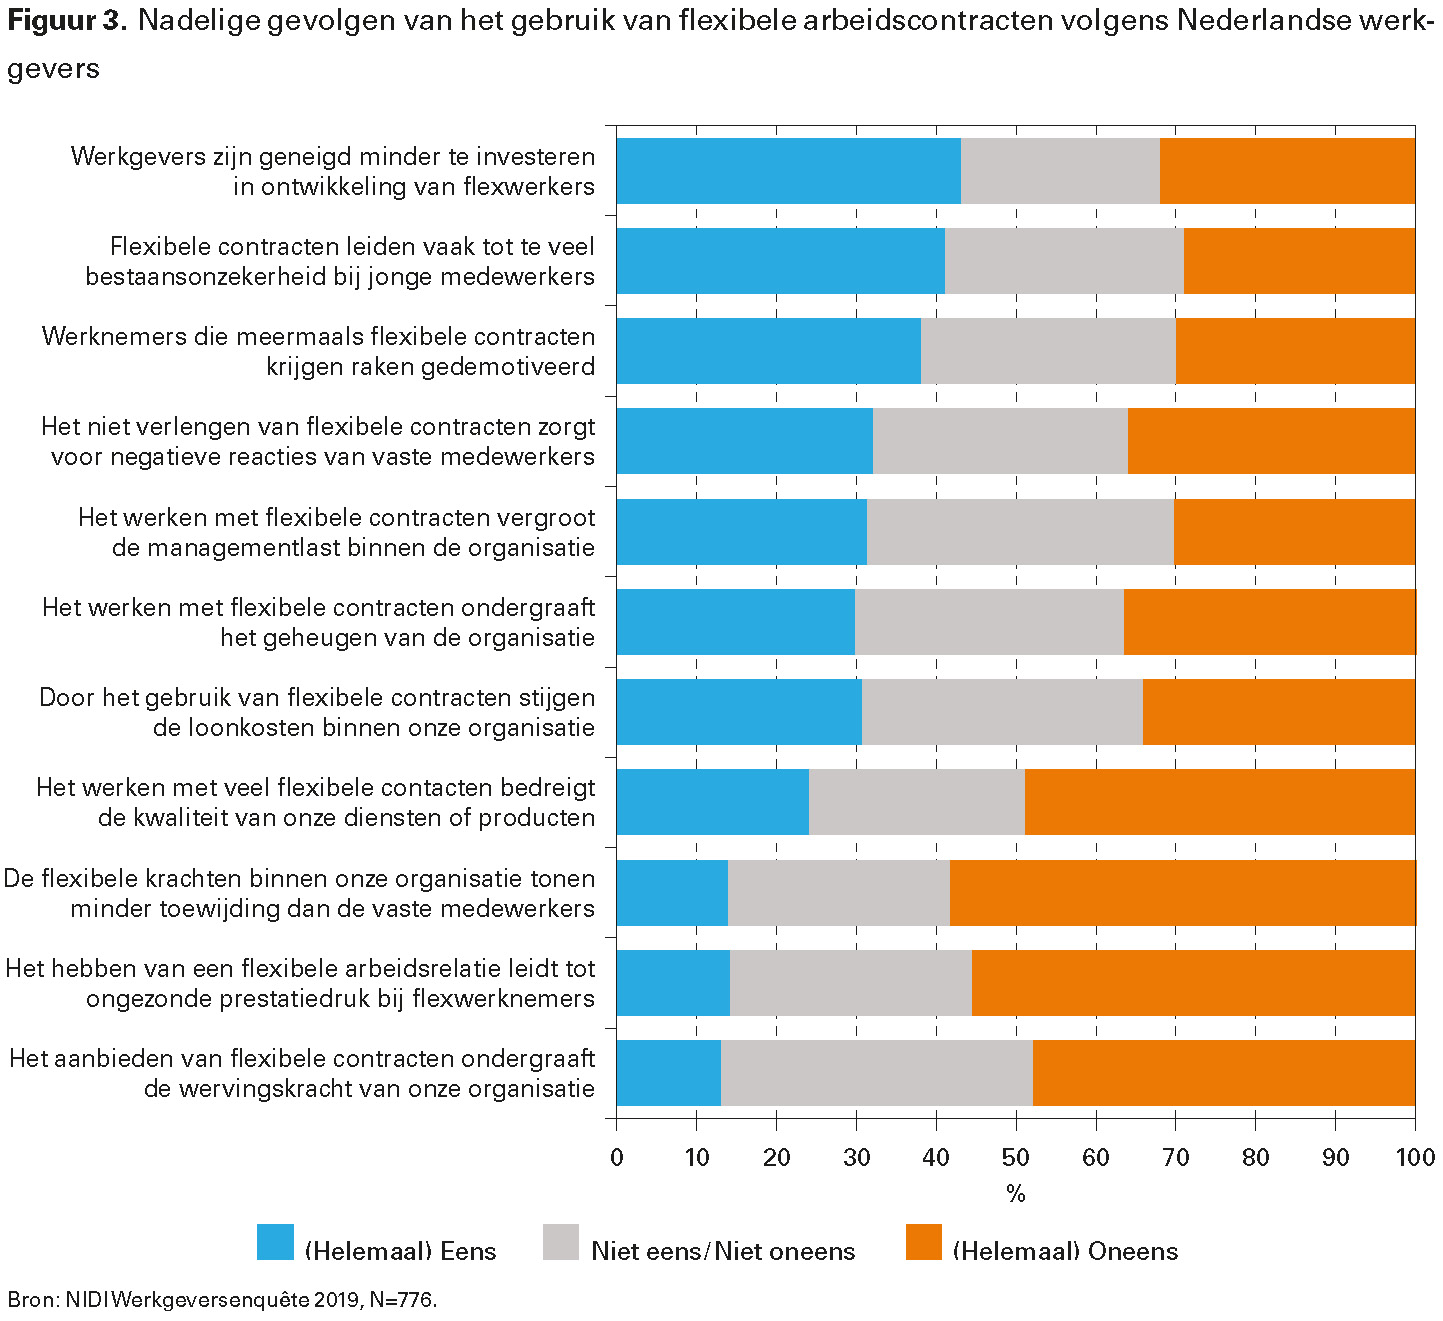 Figuur 3. Nadelige gevolgen van het gebruik van flexibele arbeidscontracten volgens Nederlandse werkgevers